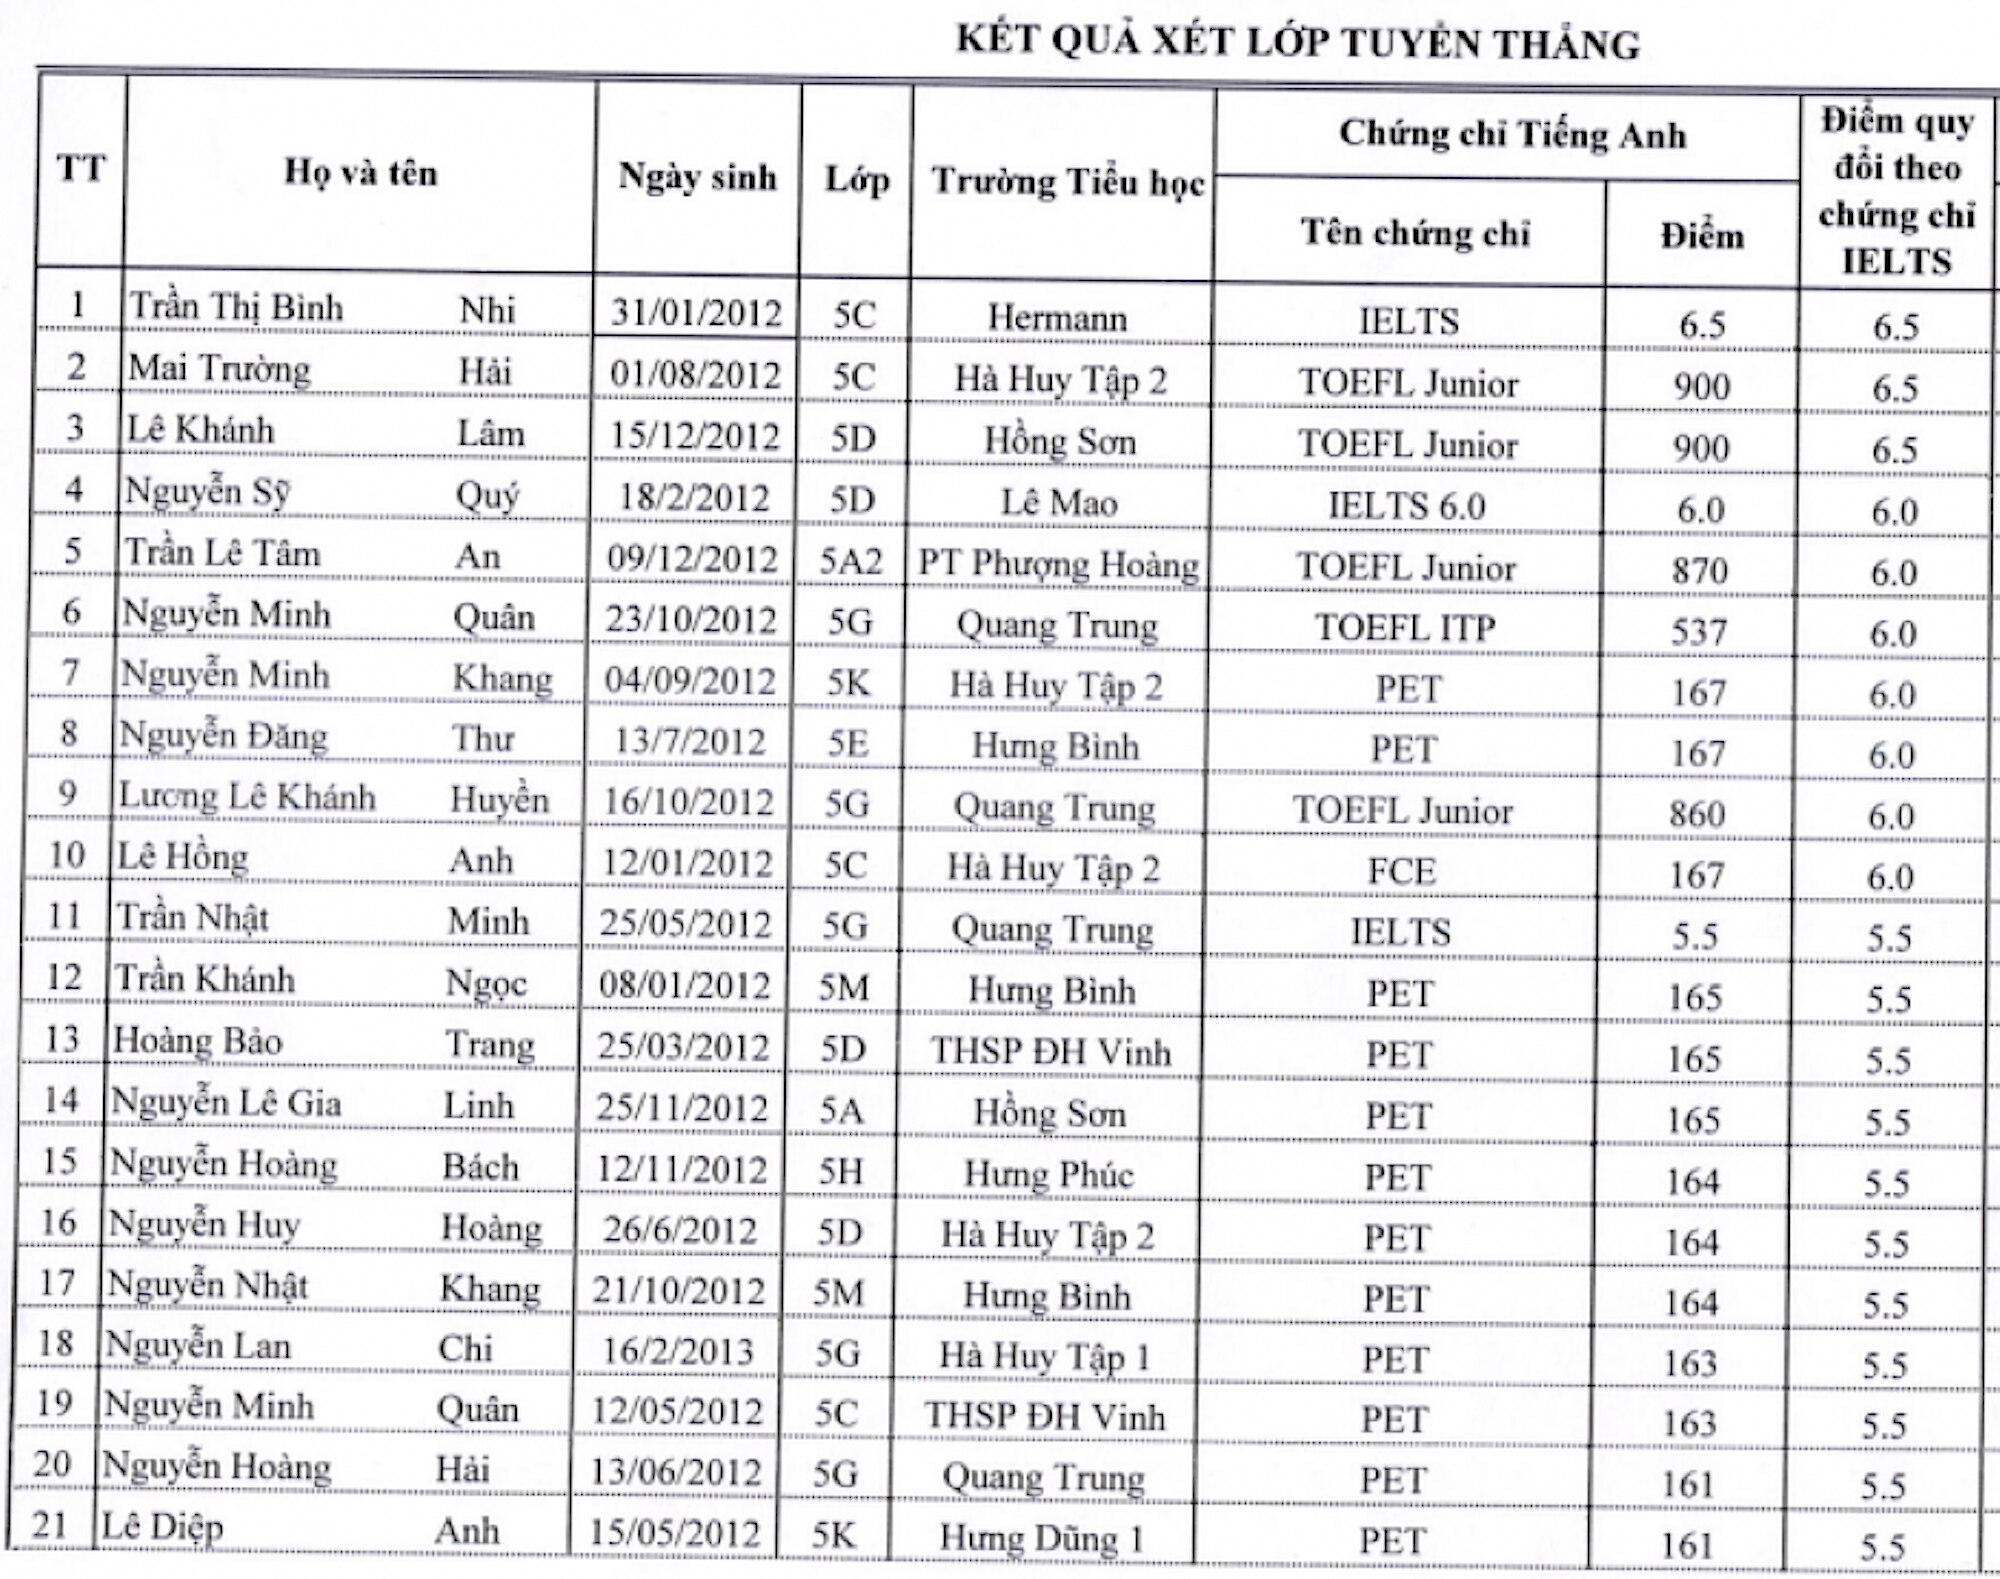 Trường THCS ở Nghệ An tuyển thẳng 35 học sinh vào lớp 6 đạt IELTS 5.0  - 1